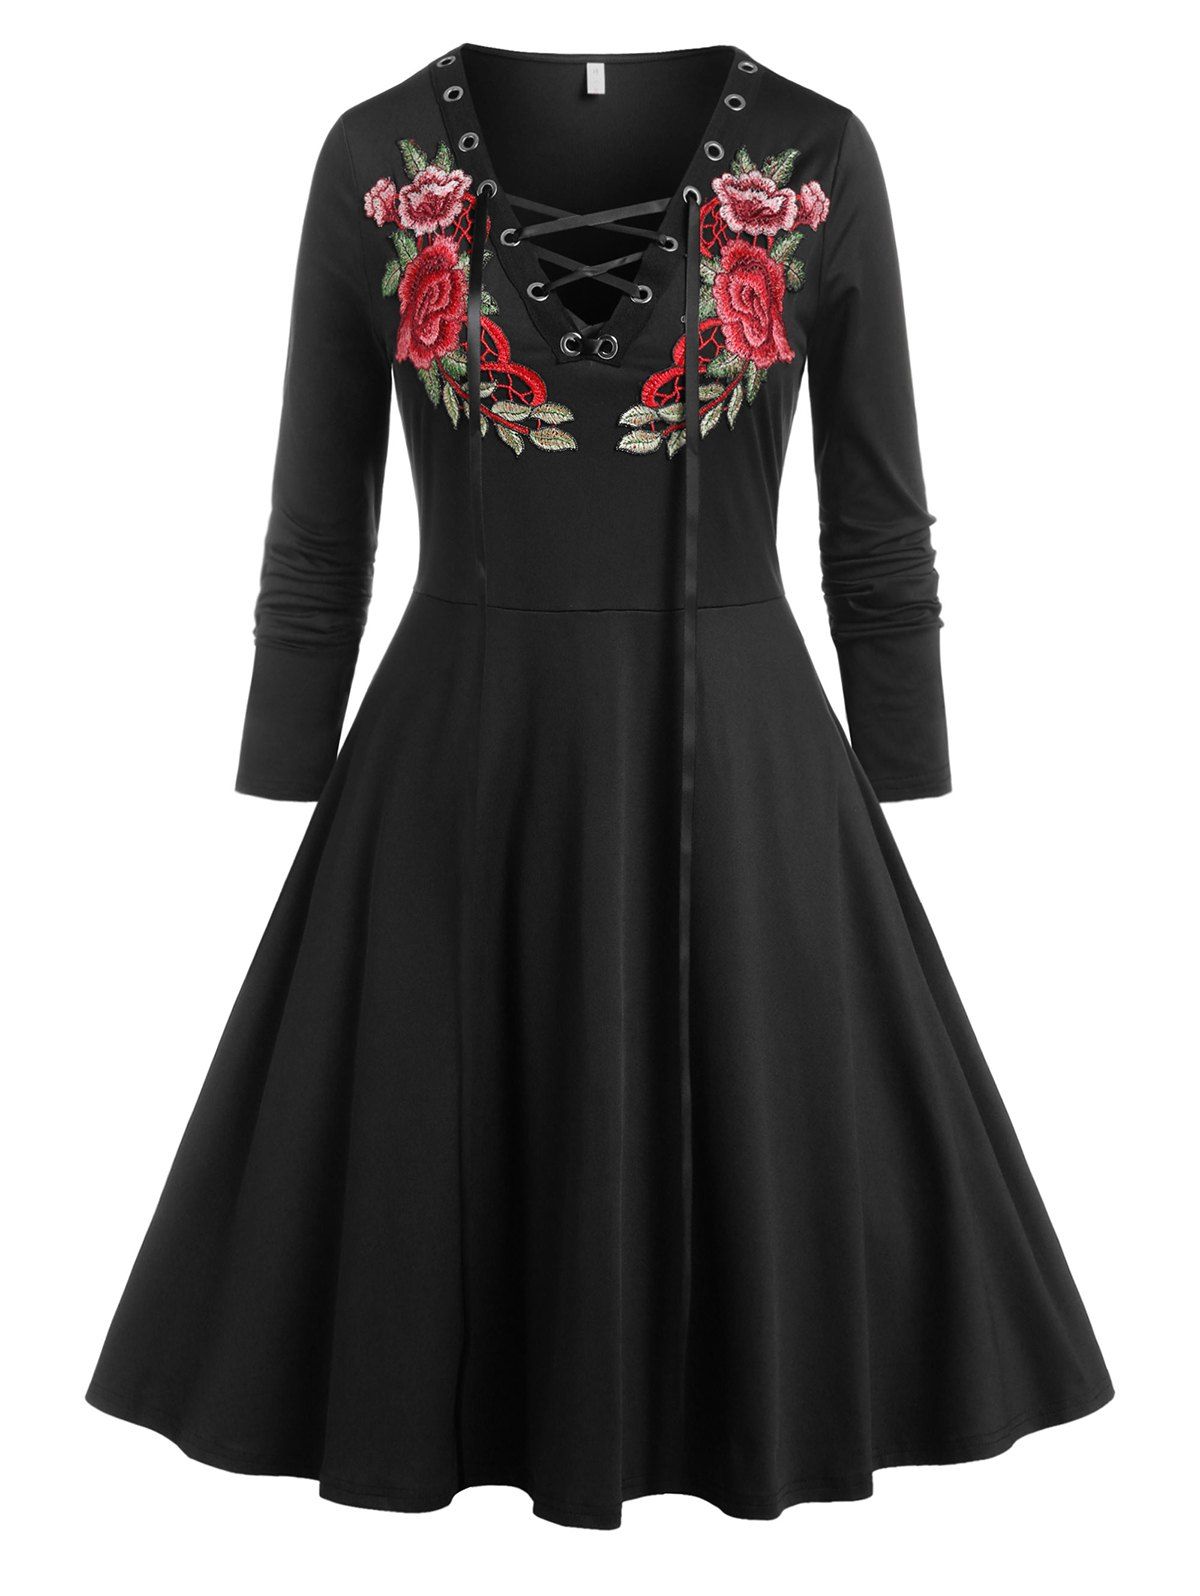 Plus Size Lace Up Floral Applique Dress - BLACK 2X